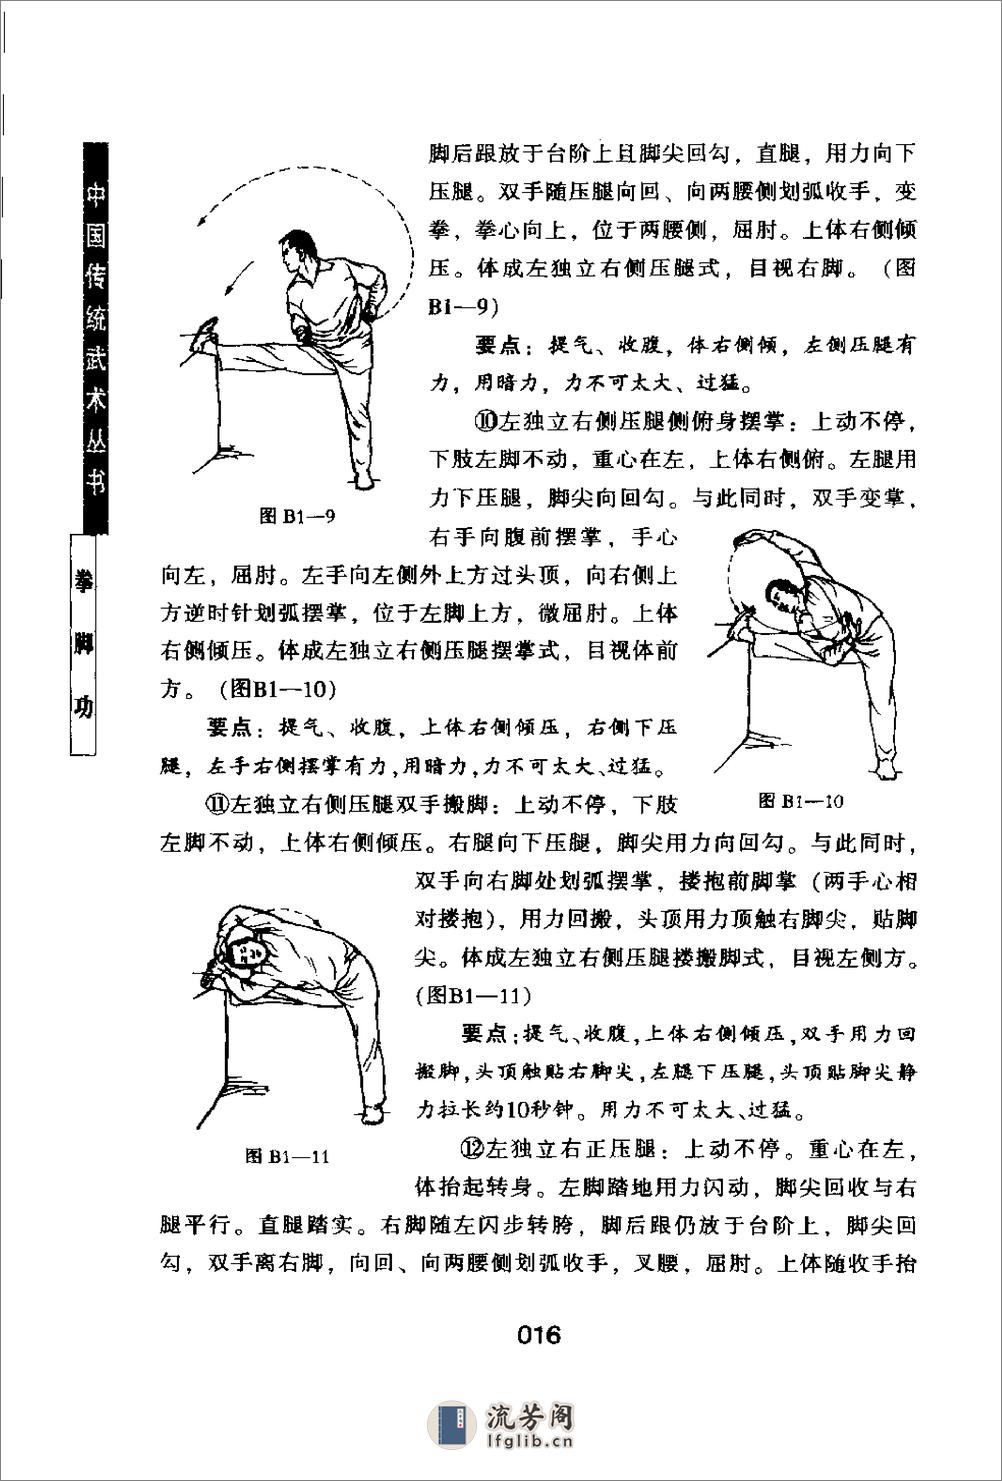 《中国传统武术丛书·卷一·拳脚功》洪述顺 - 第20页预览图